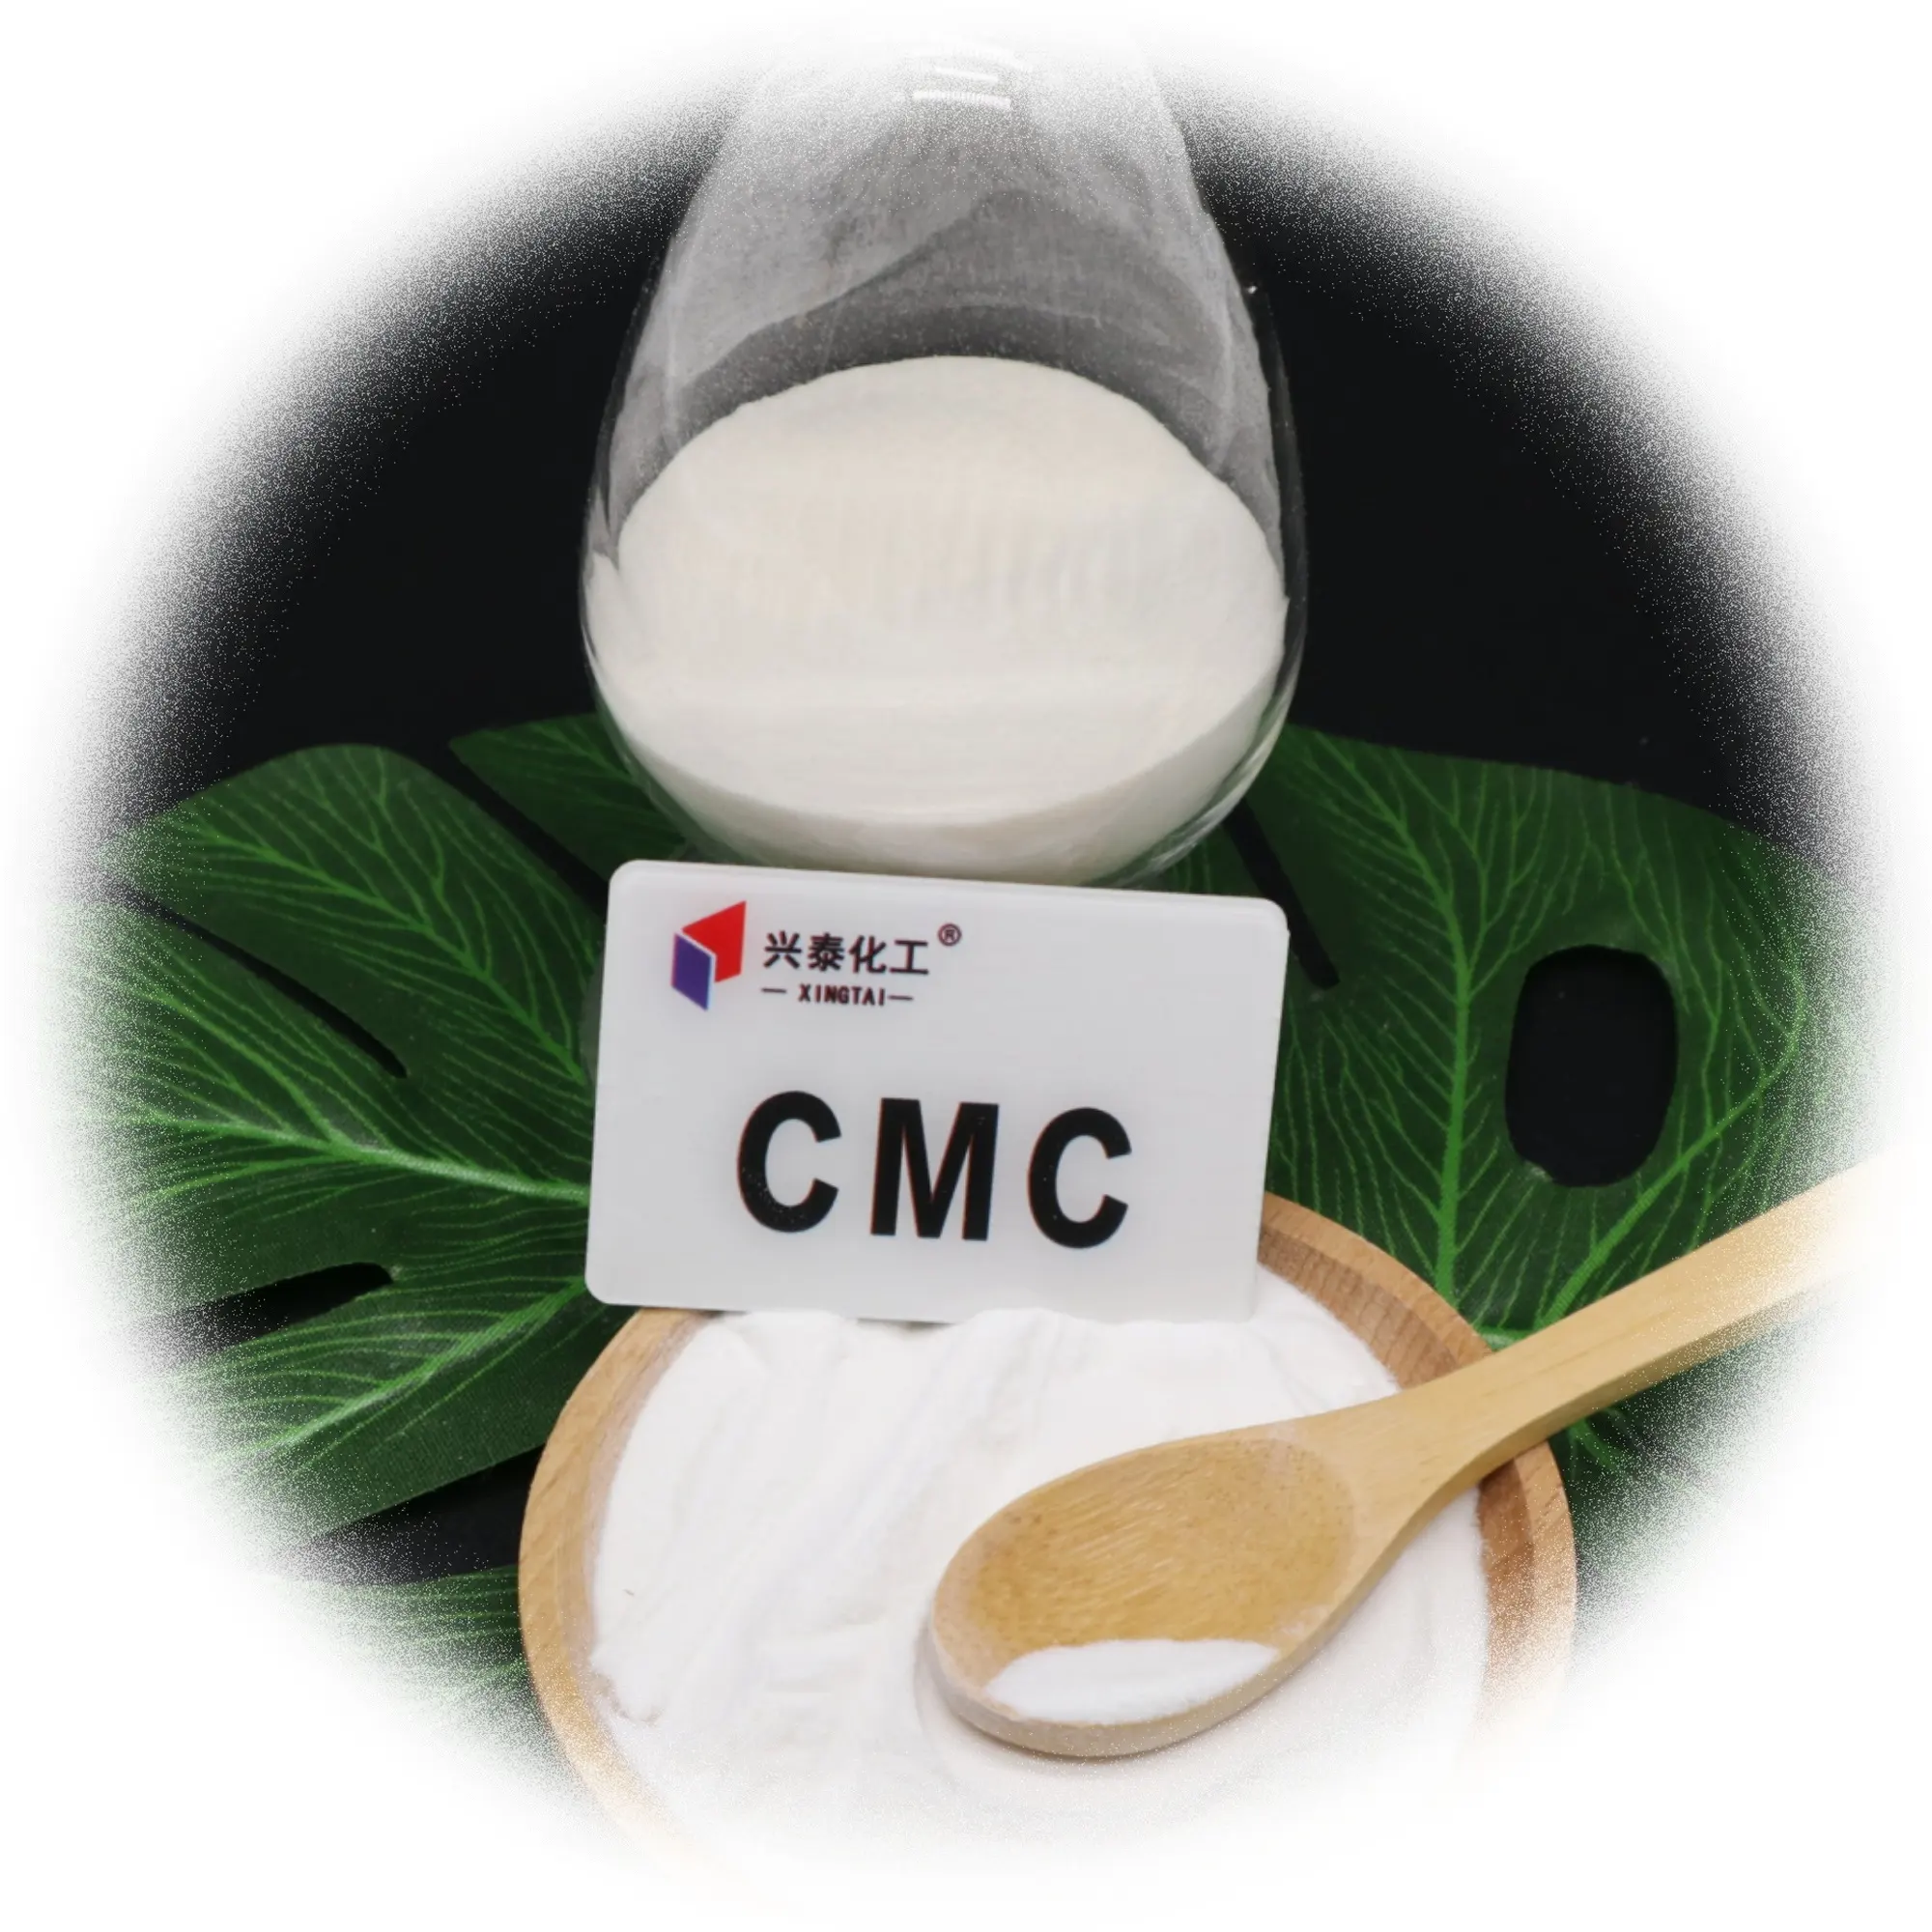 Toplu satış gıda/endüstriyel sınıf kalınlaştırıcı CMC emülgatör sodyum karboksimetil selüloz